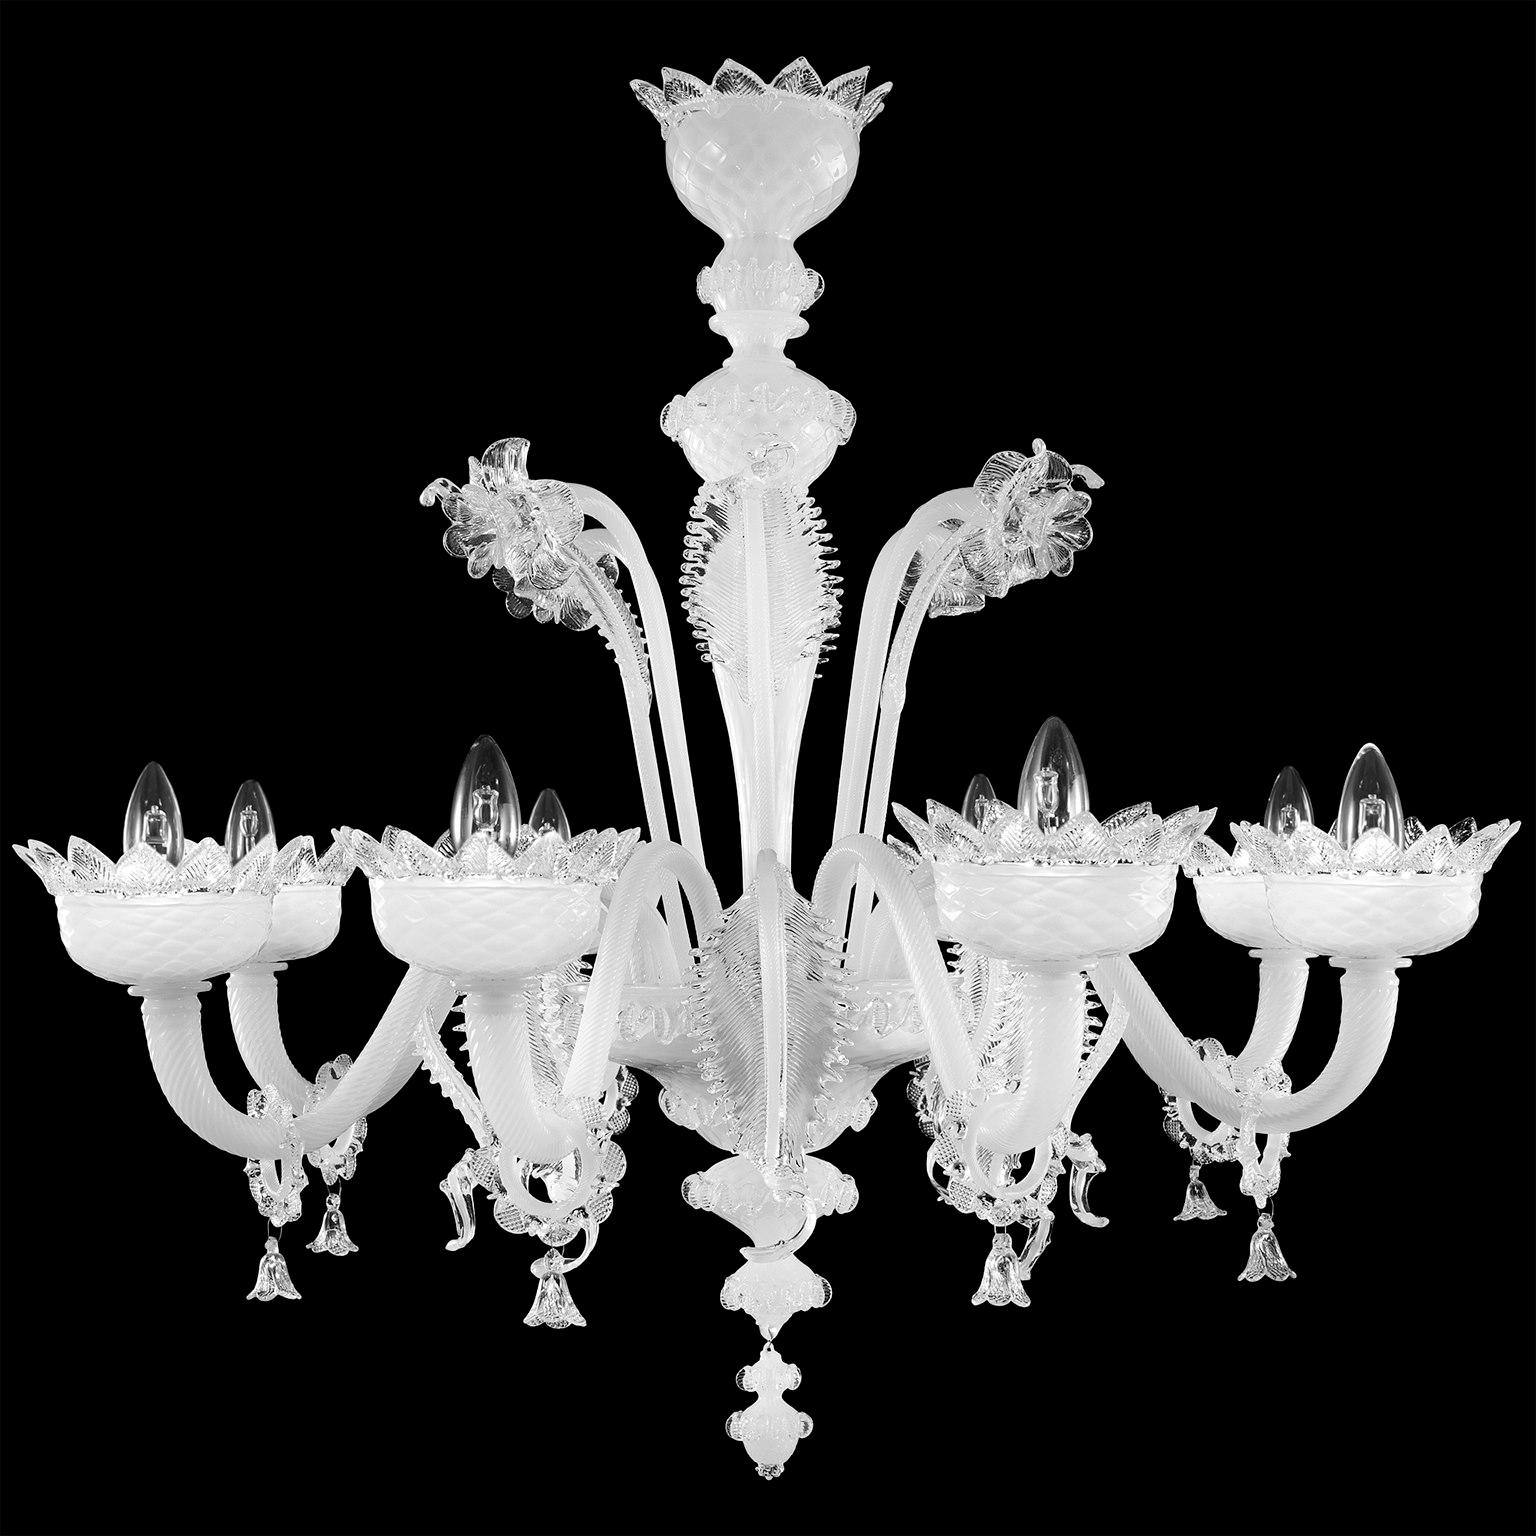 Klassischer 8-armiger Kronleuchter aus weißem Seiden-Murano-Glas mit Kristalldetails von Multiforme.
Der klassische Murano-Glaslüster, wie er in der kollektiven Vorstellung ist. Wie viele andere Kronleuchter aus unseren Kollektionen wurde auch